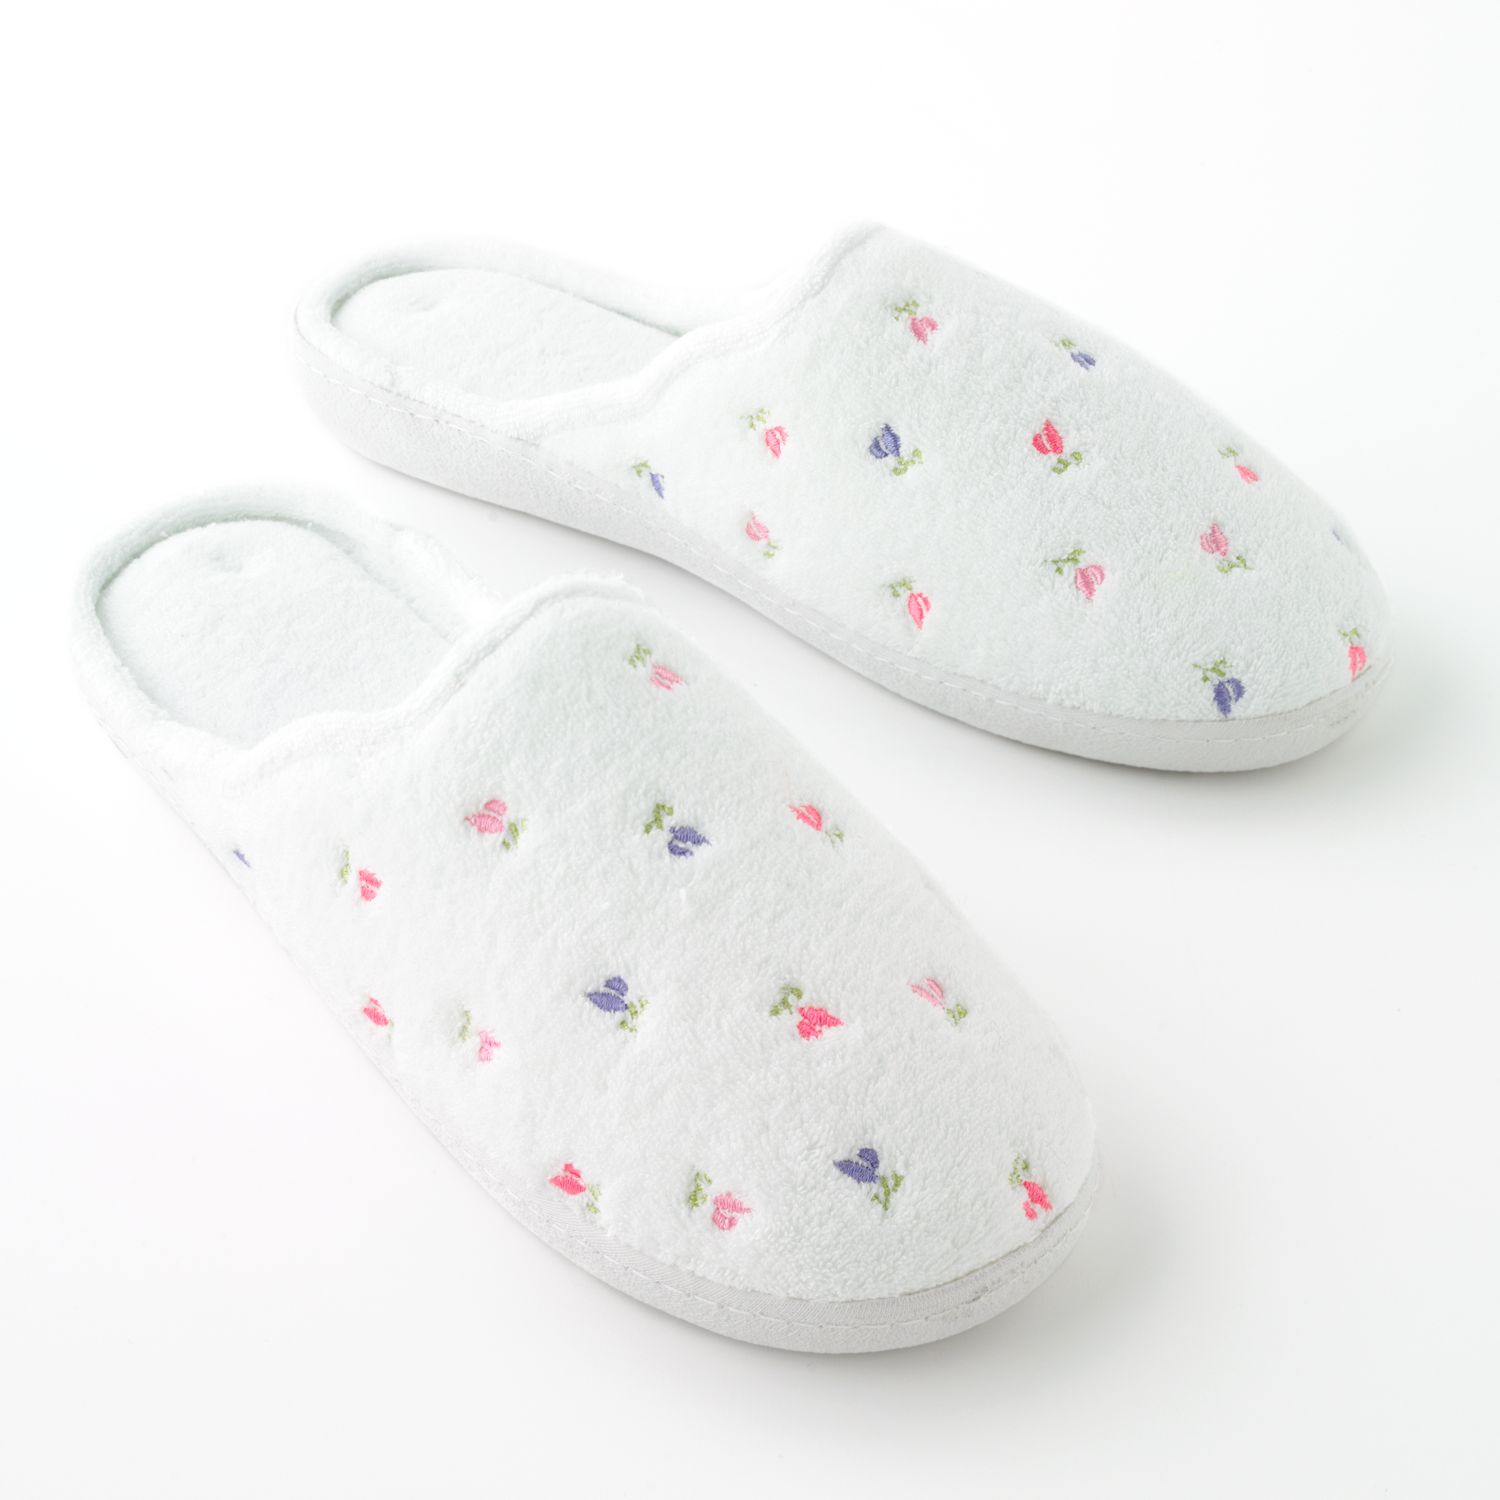 secret sole slippers